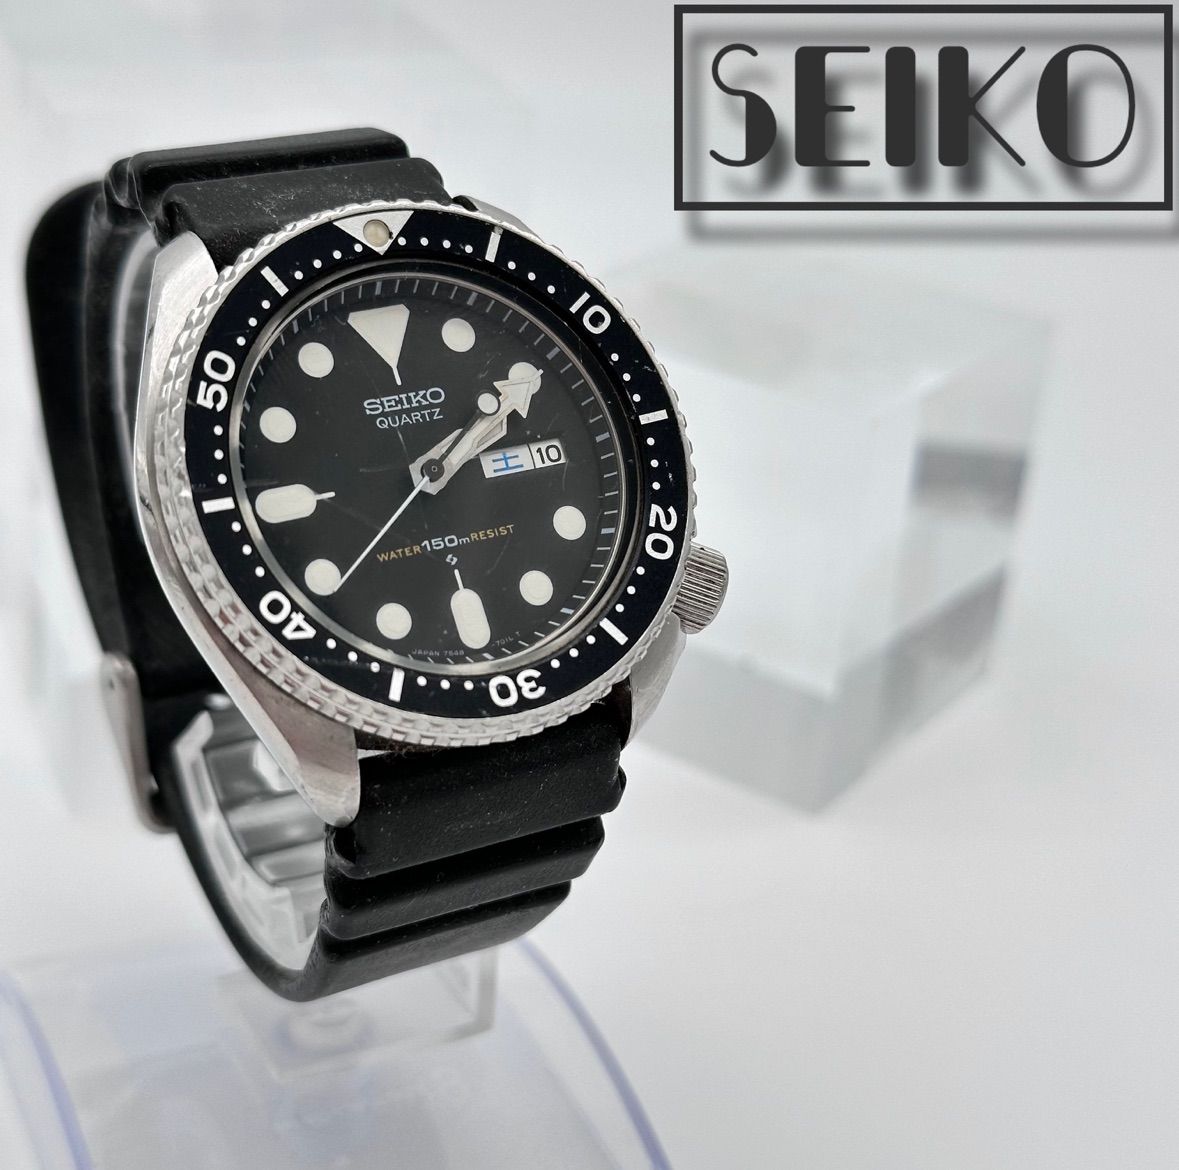 kazubrand_watchSEIKO セイコー クォーツ式 腕時計 メンズ アナログ 黒 